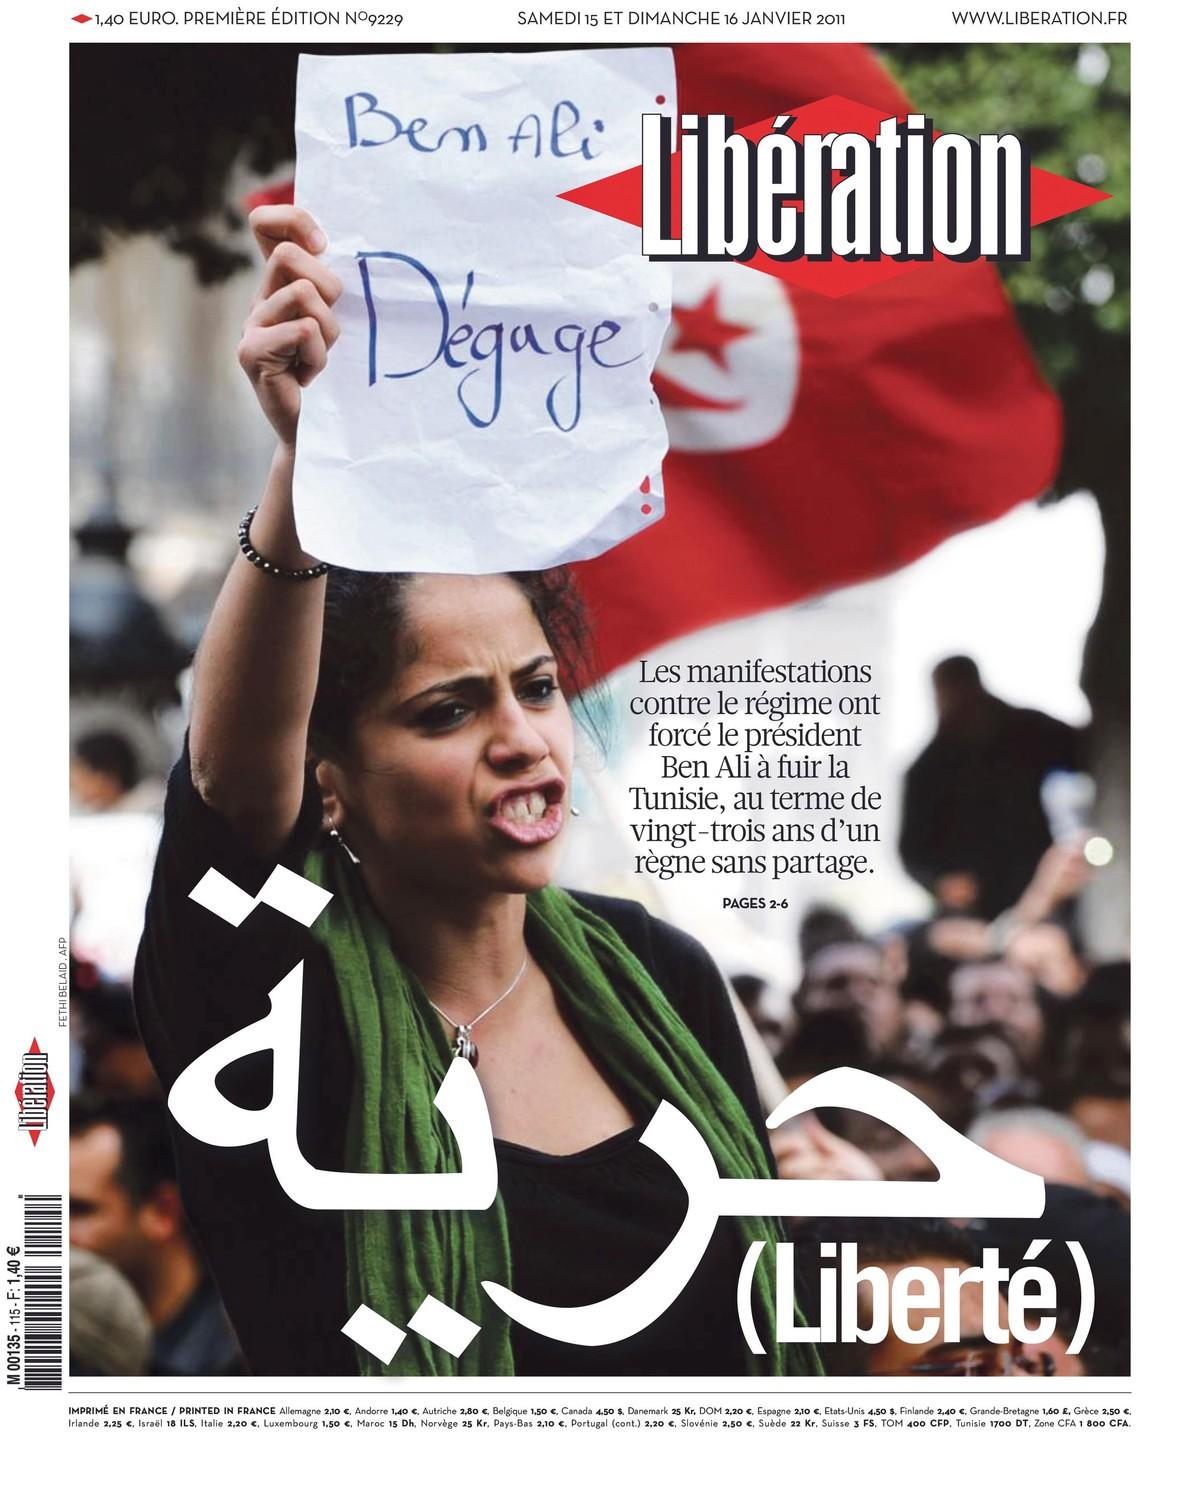 Les « printemps arabes » en Tunisie